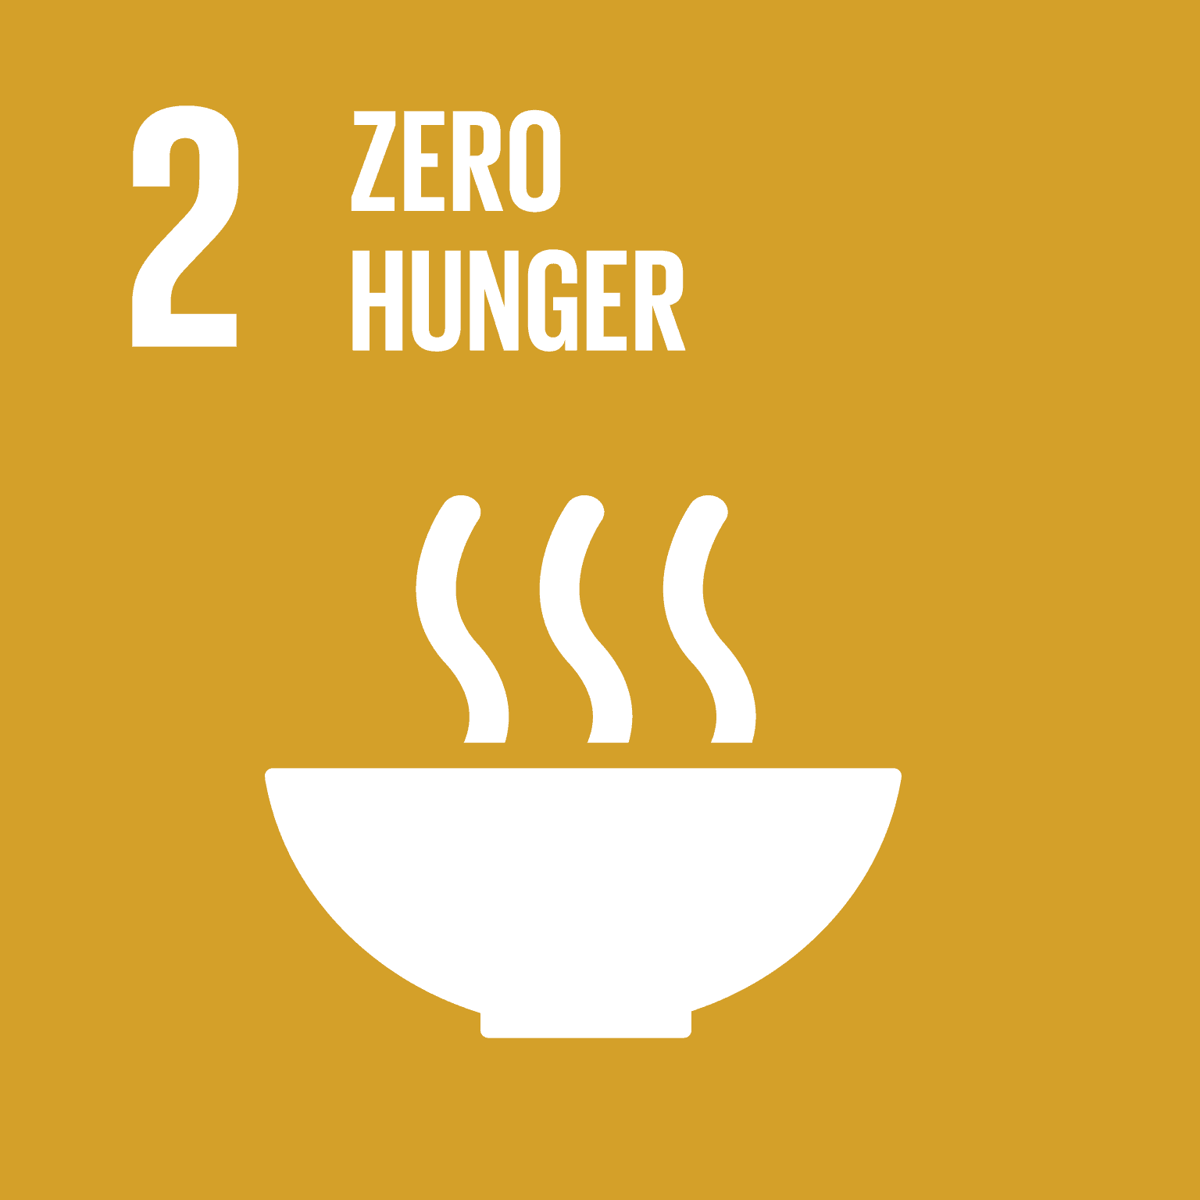 SDG 2 - Zero hunger